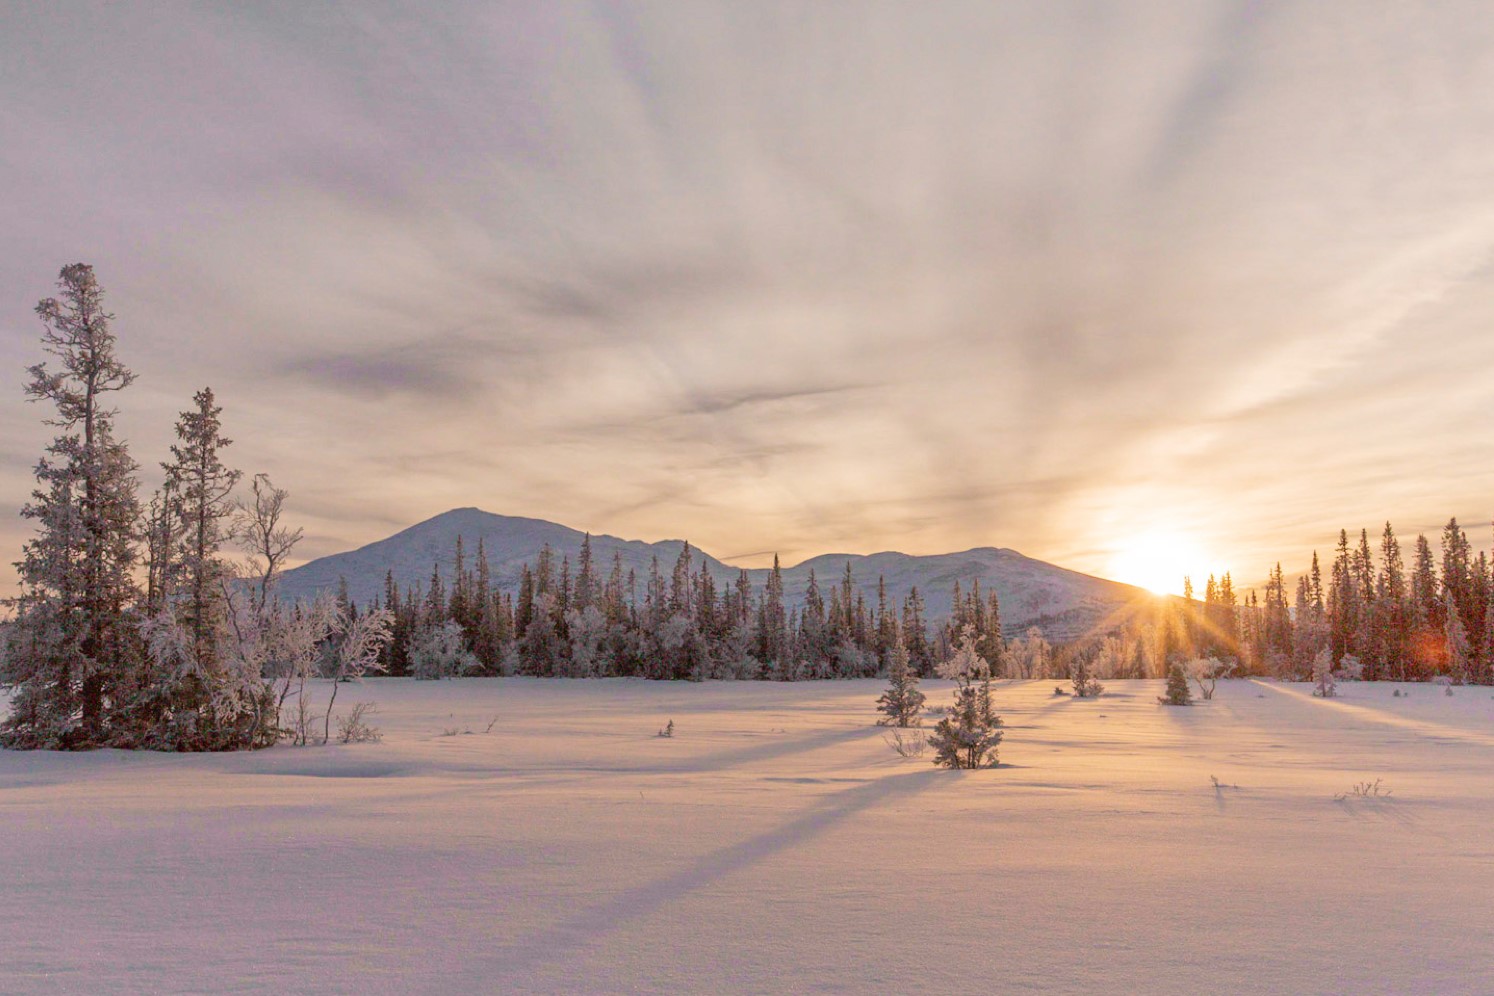 Vinterlandskap med soluppgång över ett fjäll i bakgrunden